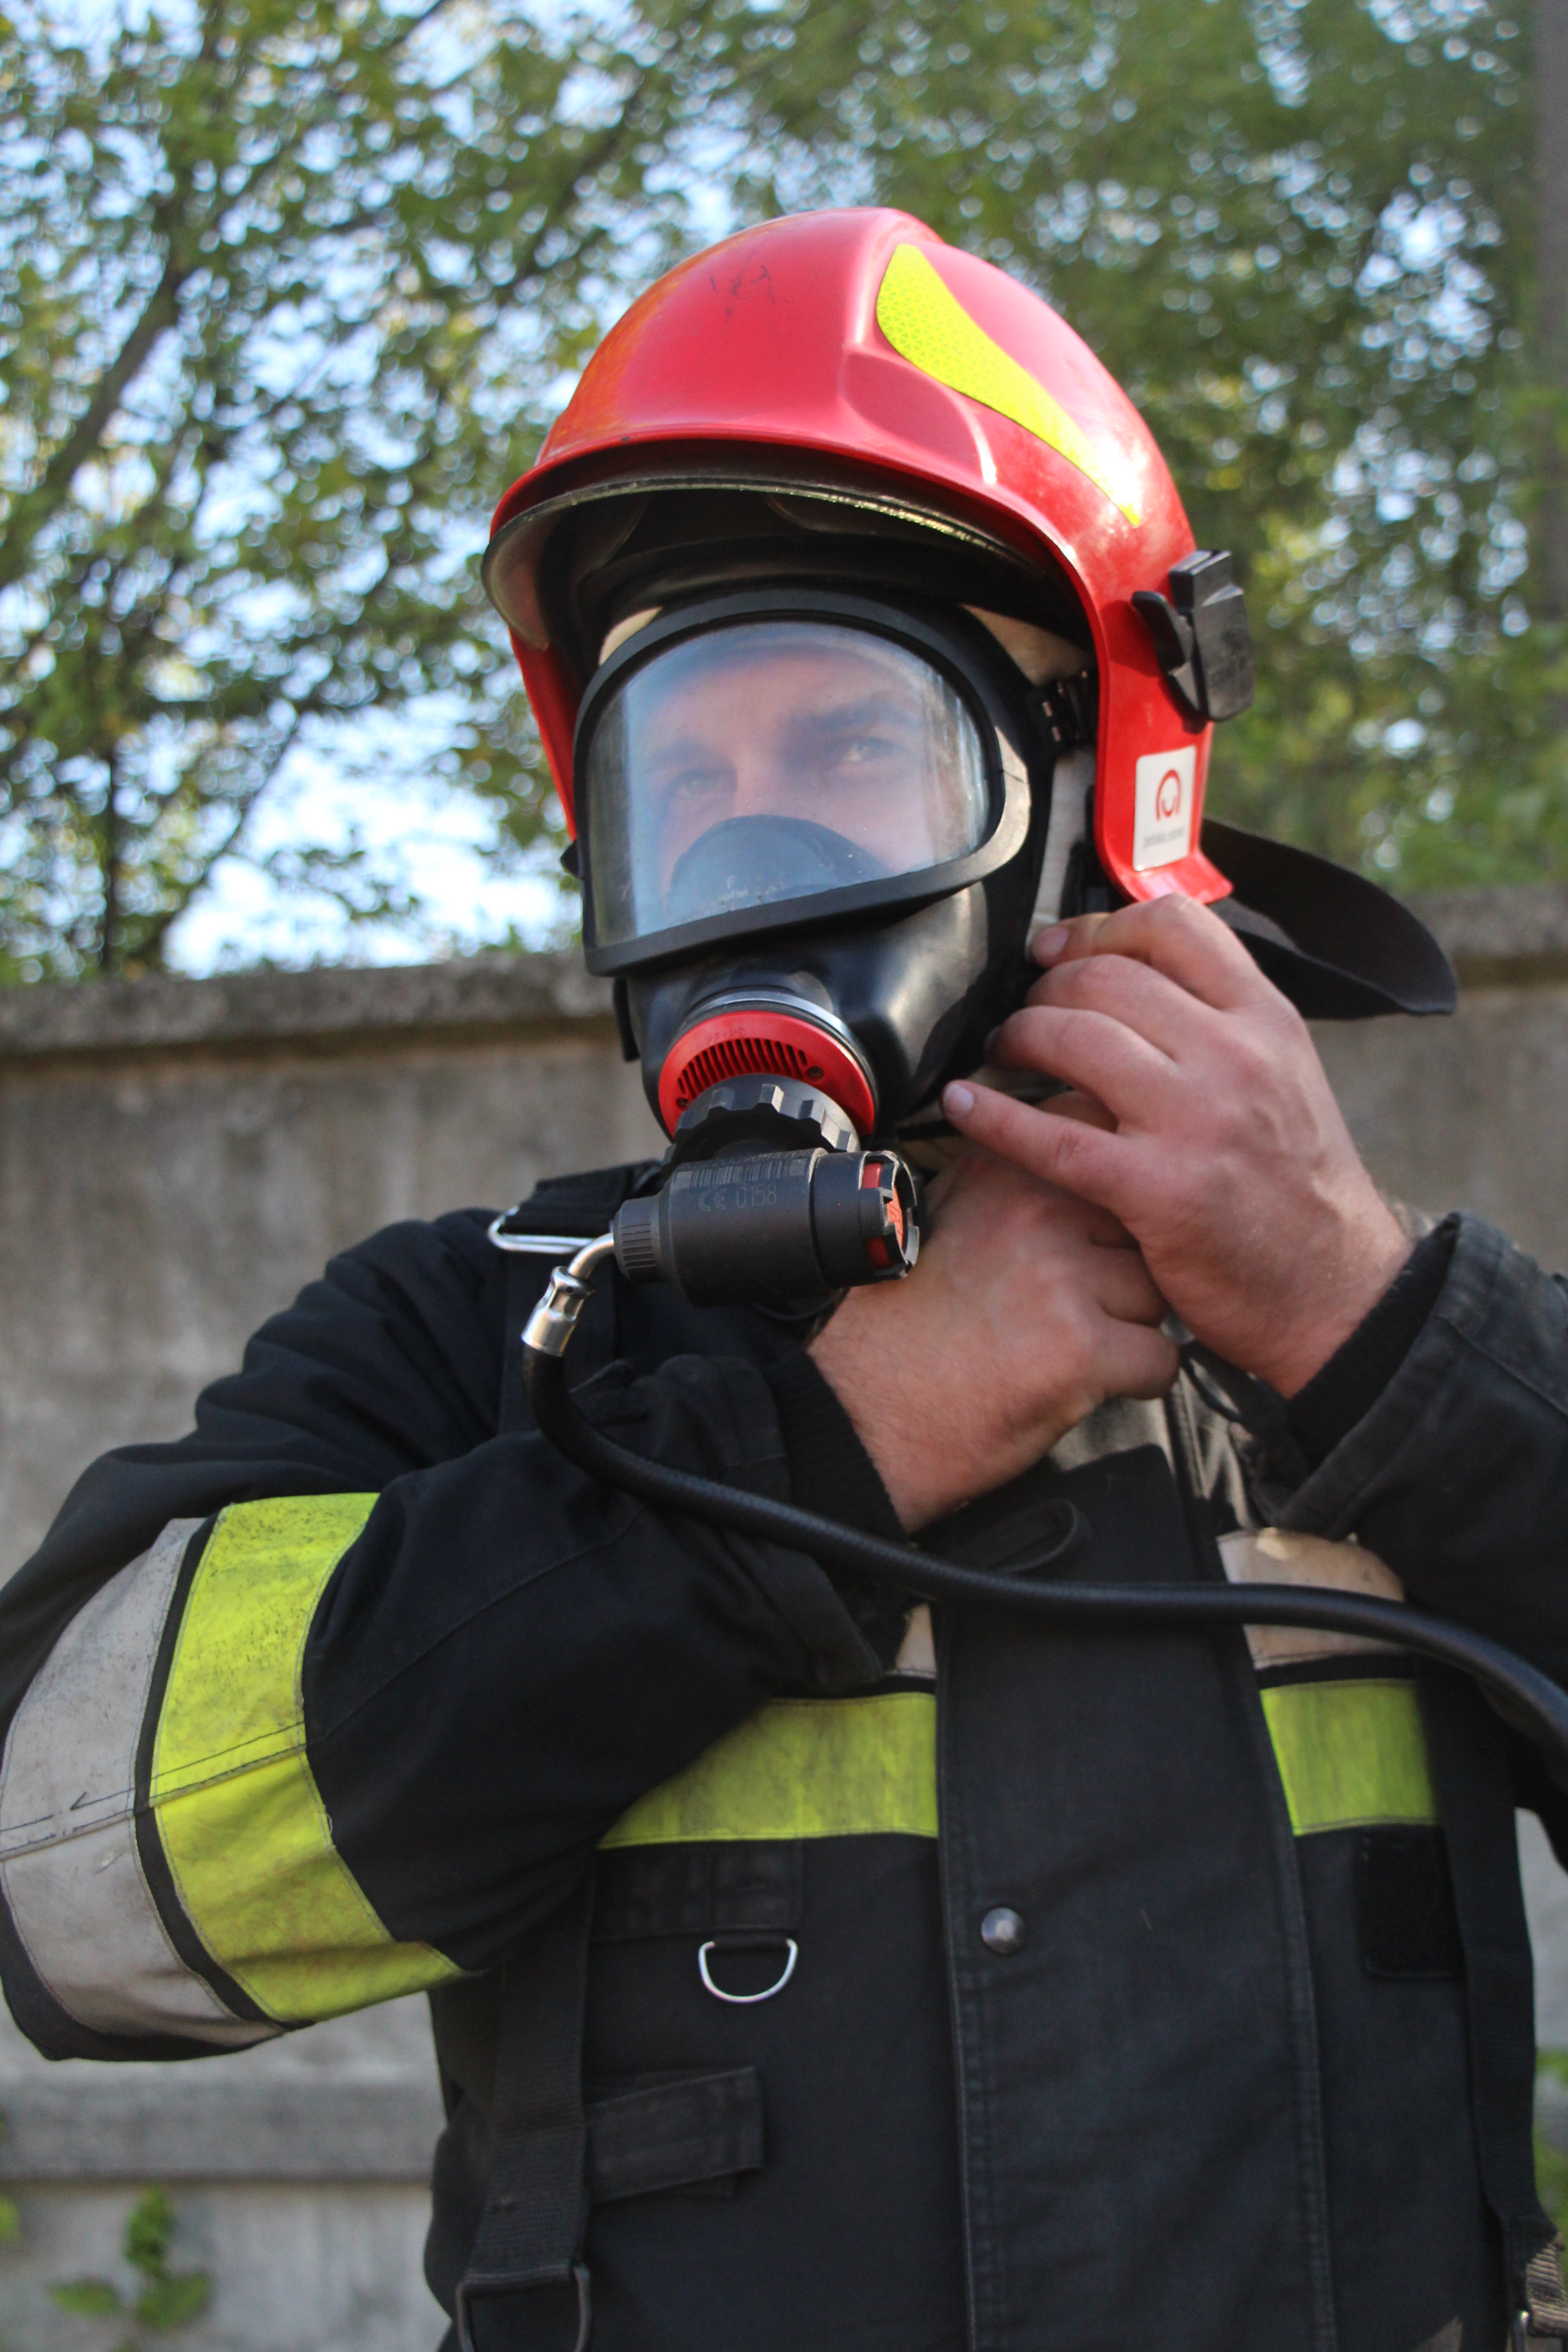 ukraiński ratownik instruktor w stroju do uczestniczenia w ćwiczeniach